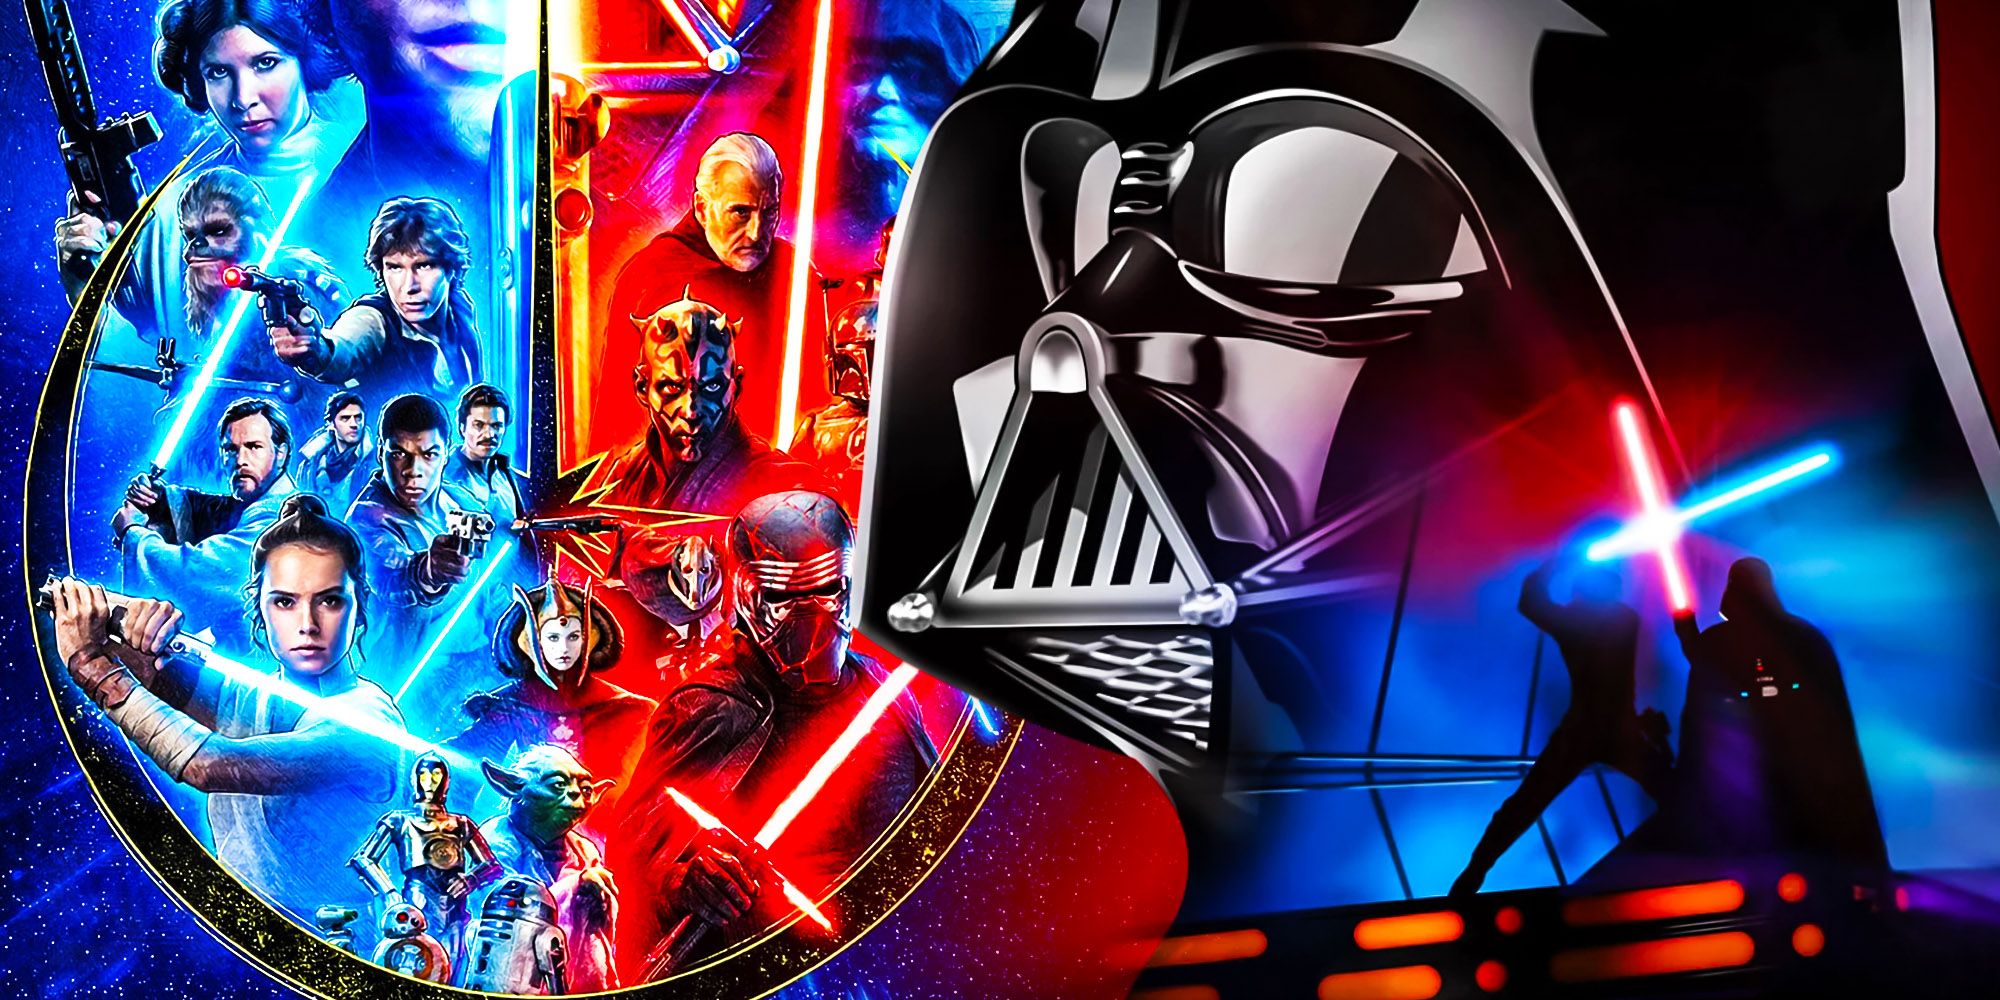 Star Wars melhor trilogia Darth Vader